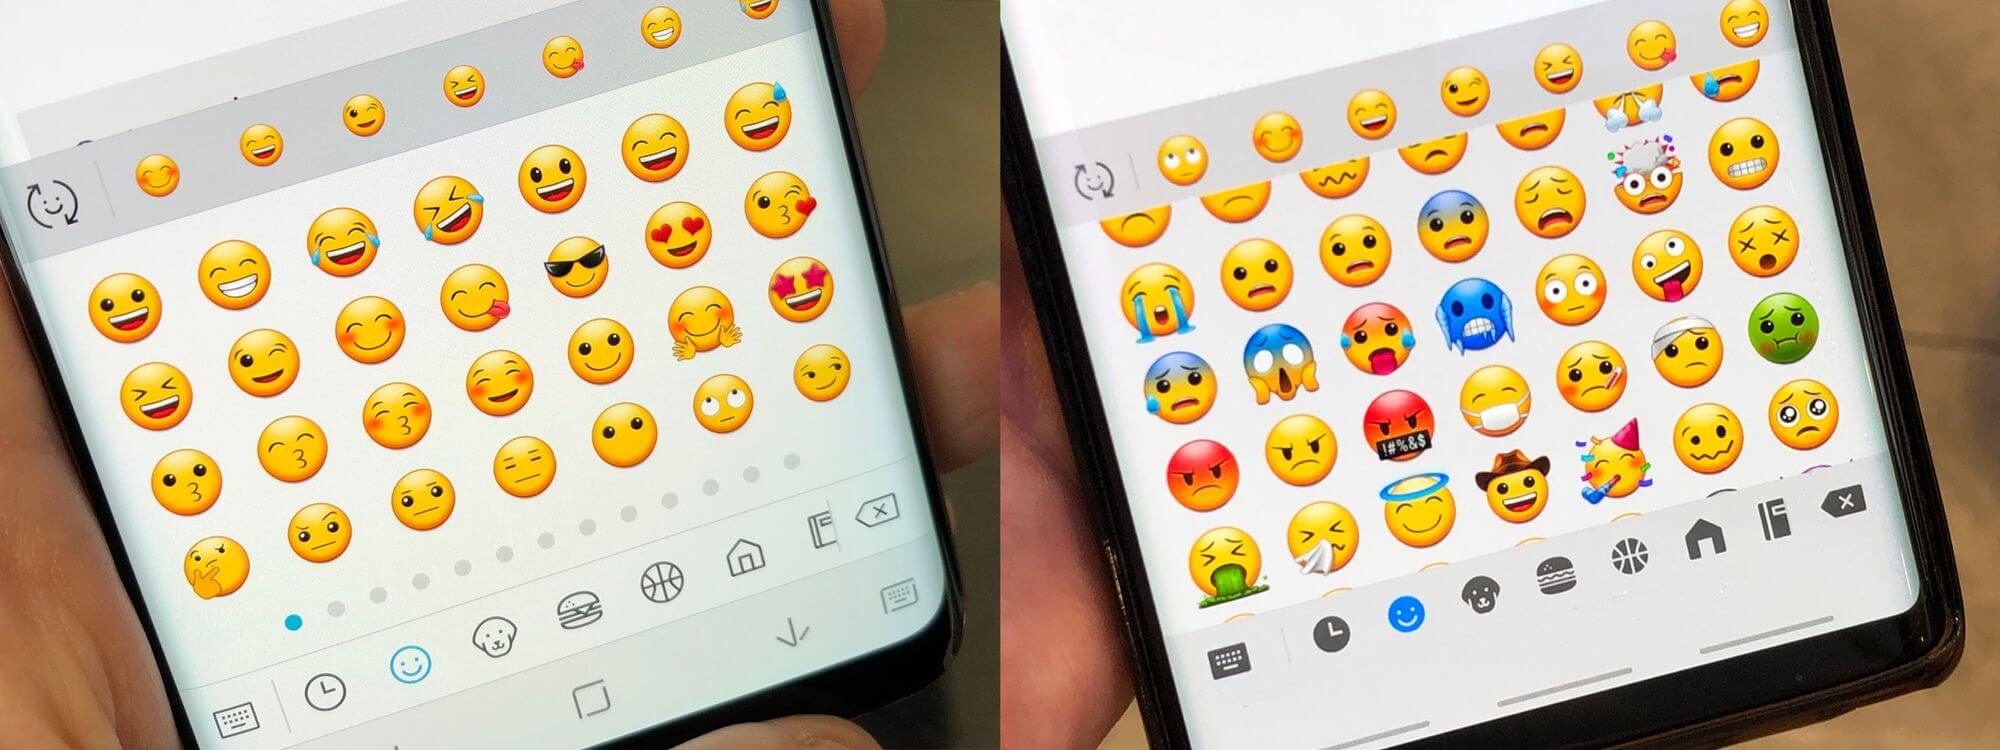 S10 won't Send Emojis